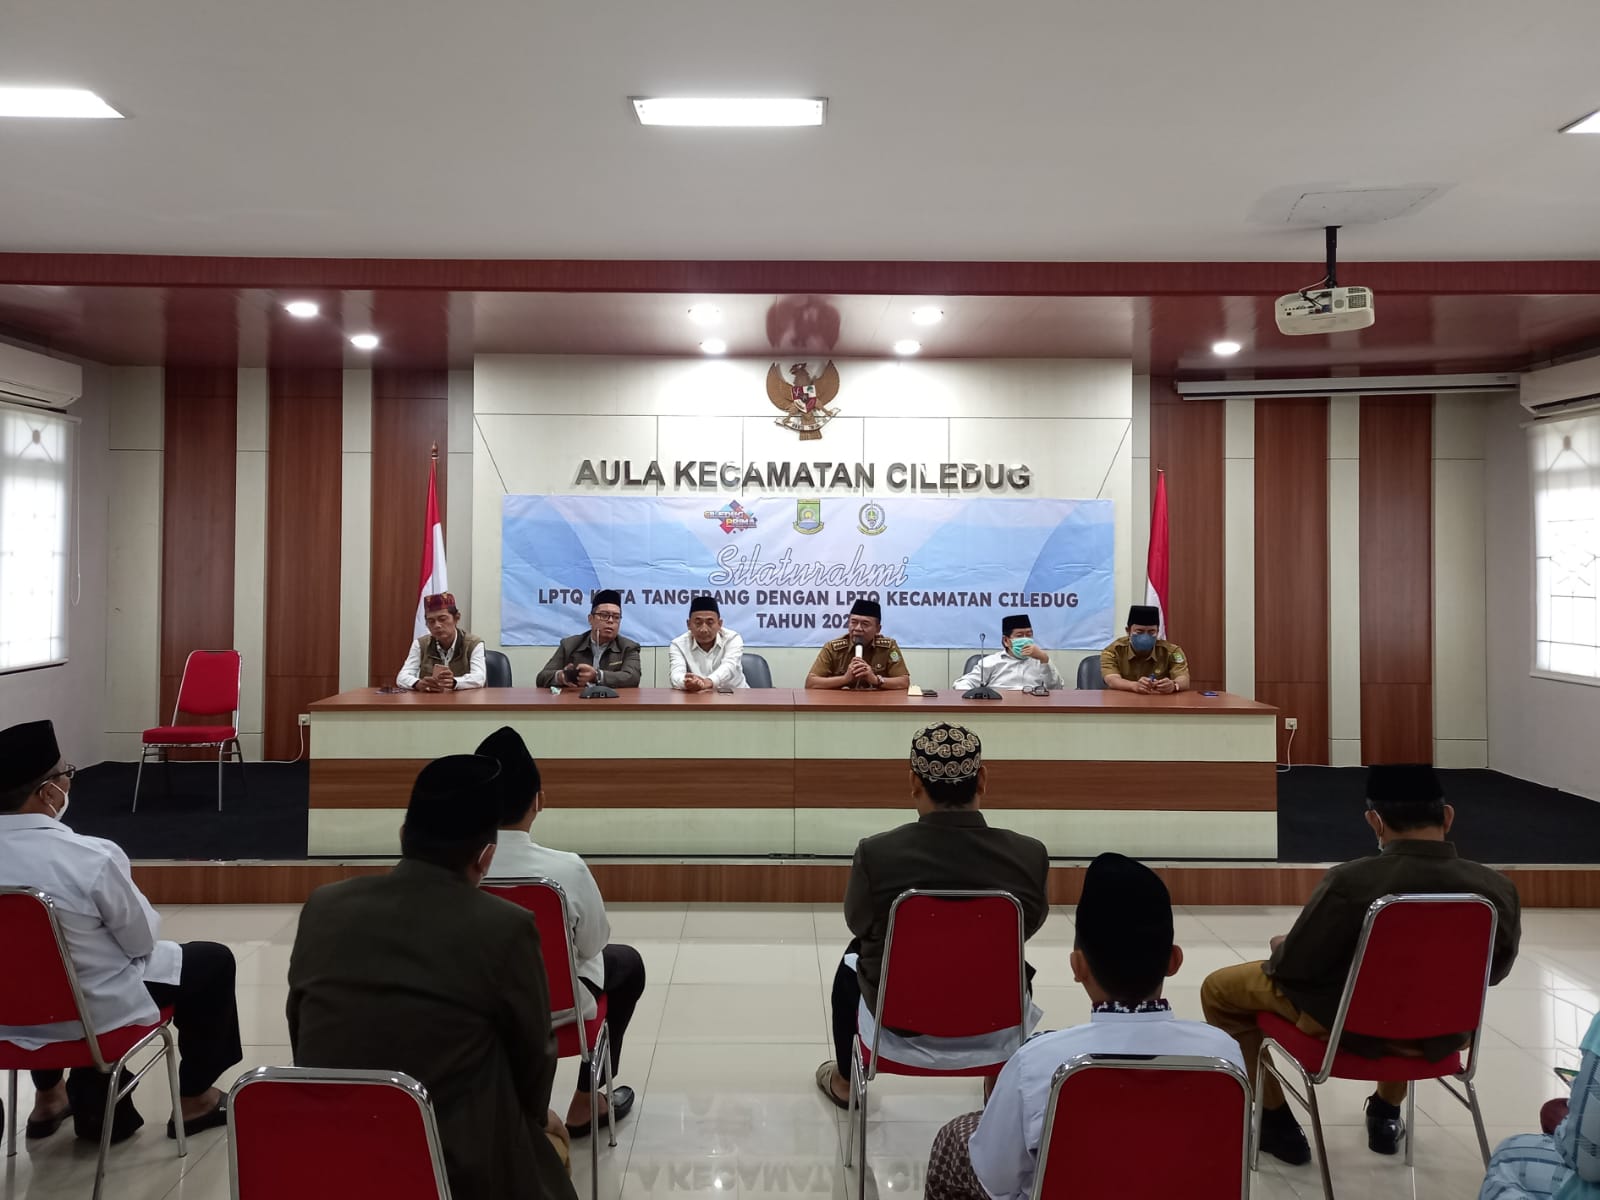 Kegiatan Silaturahmi LPTQ Kota Tangerang dengan LPTQ Kecamatan Ciledug di Aula Kecamatan